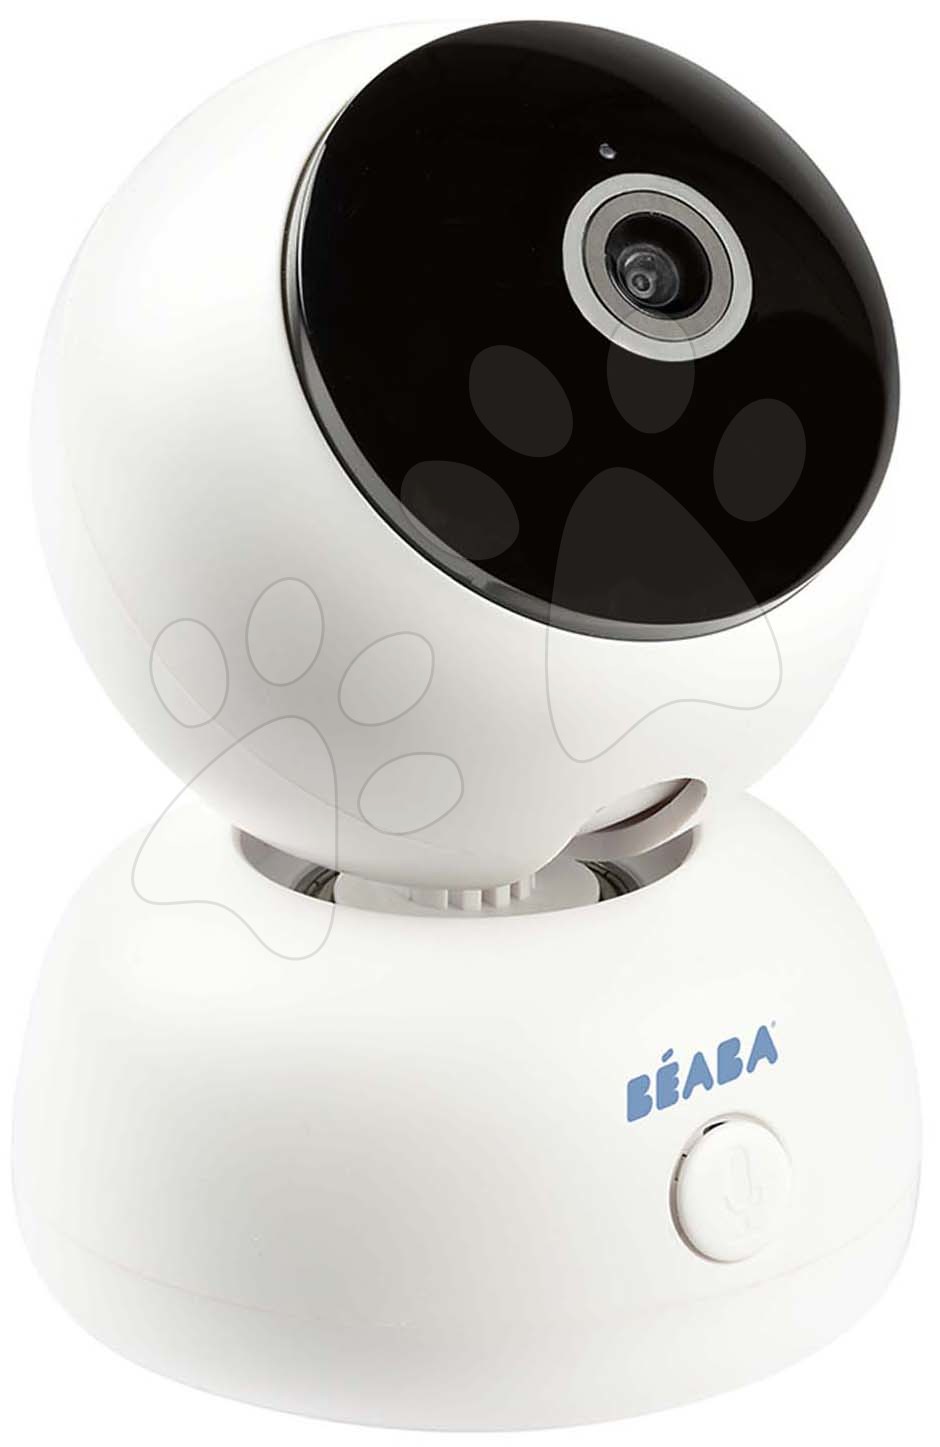 Igračke za bebe - Elektronička dadilja Video Baby Monitor Zen Premium Beaba 2u1 s 360 stupnjeva rotacije 1080 FULL HD s infracrvenim noćnim vidom